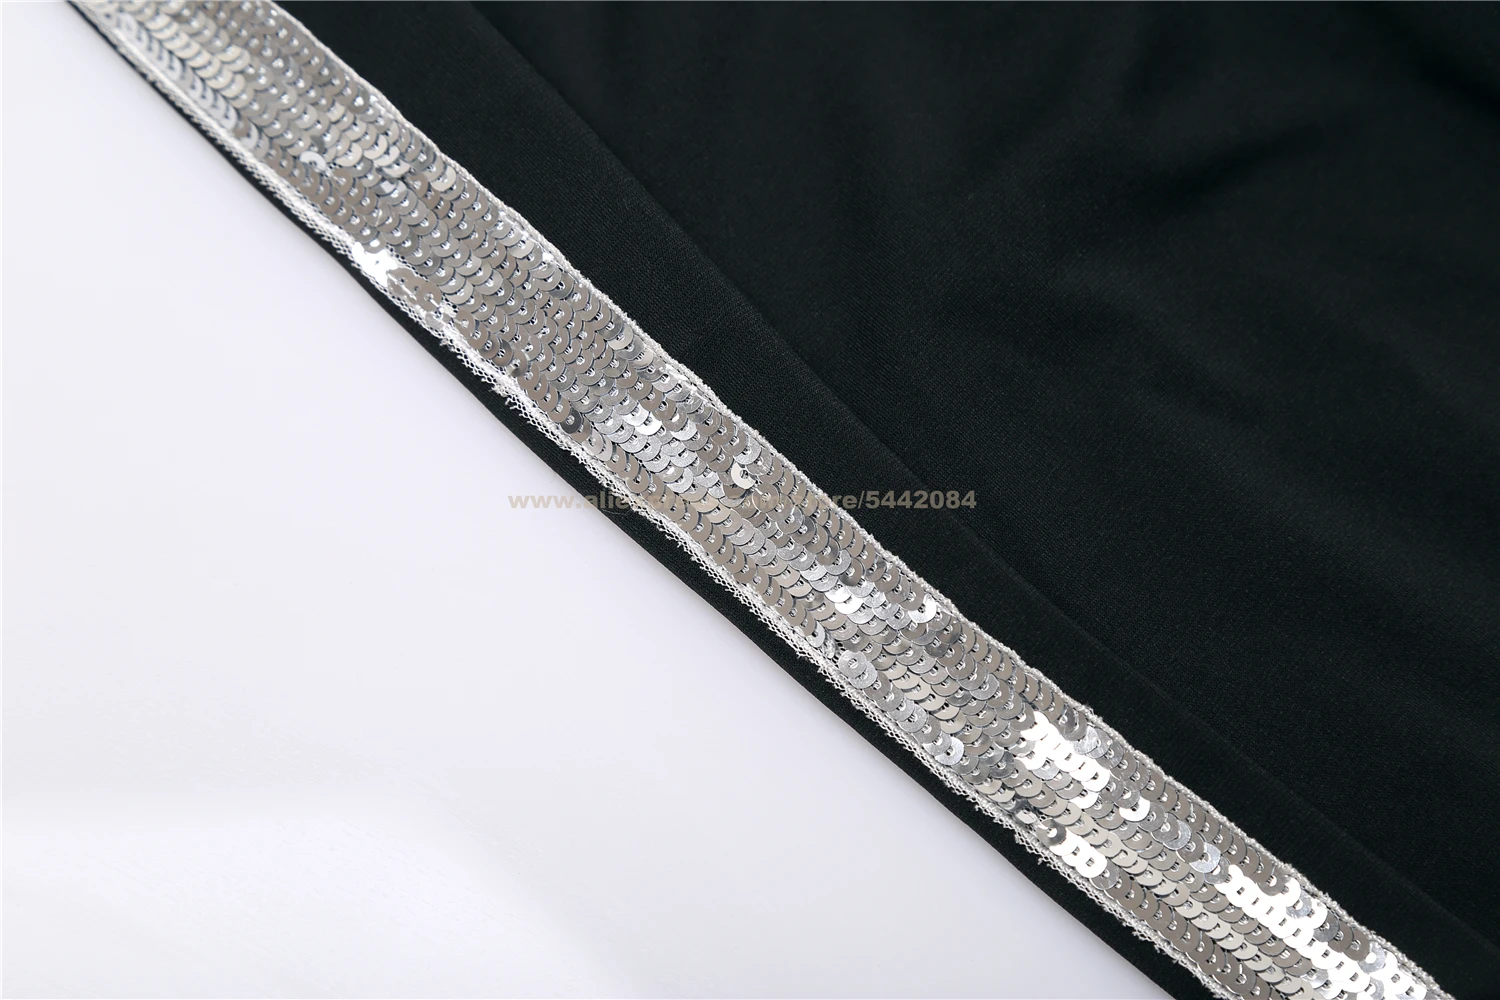 MJ Майкл Джексон Билли джинсовые брюки Серебристые полосы черные брюки для коллекции вечерние Брюки Костюм Косплей Prop#1BLJD06012